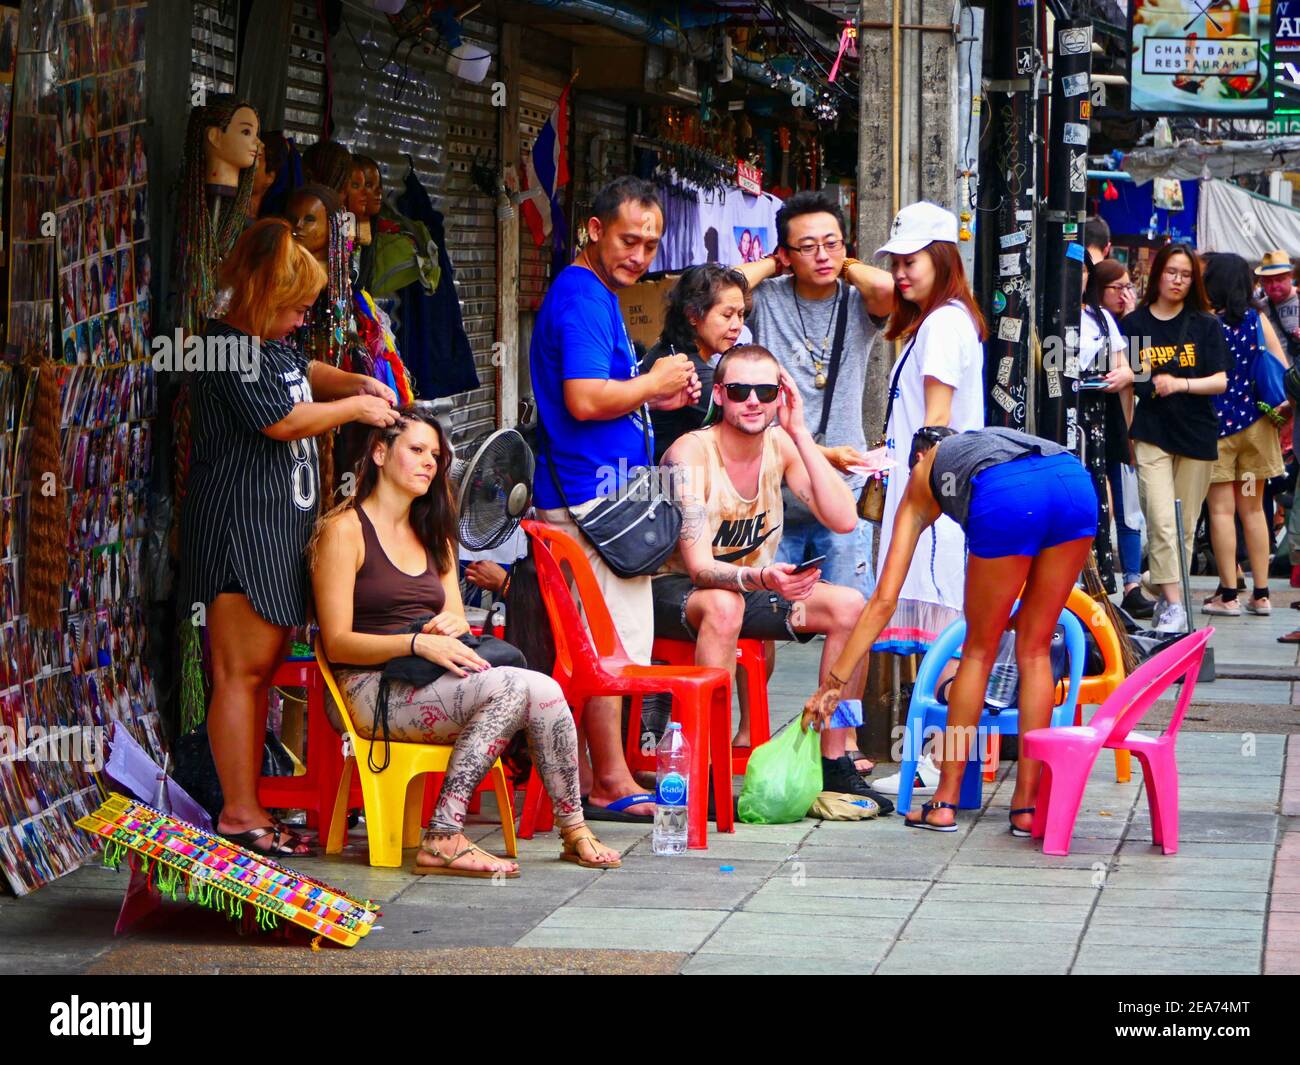 Coiffeur de la scène de rue, Bangkok Thaïlande Banque D'Images